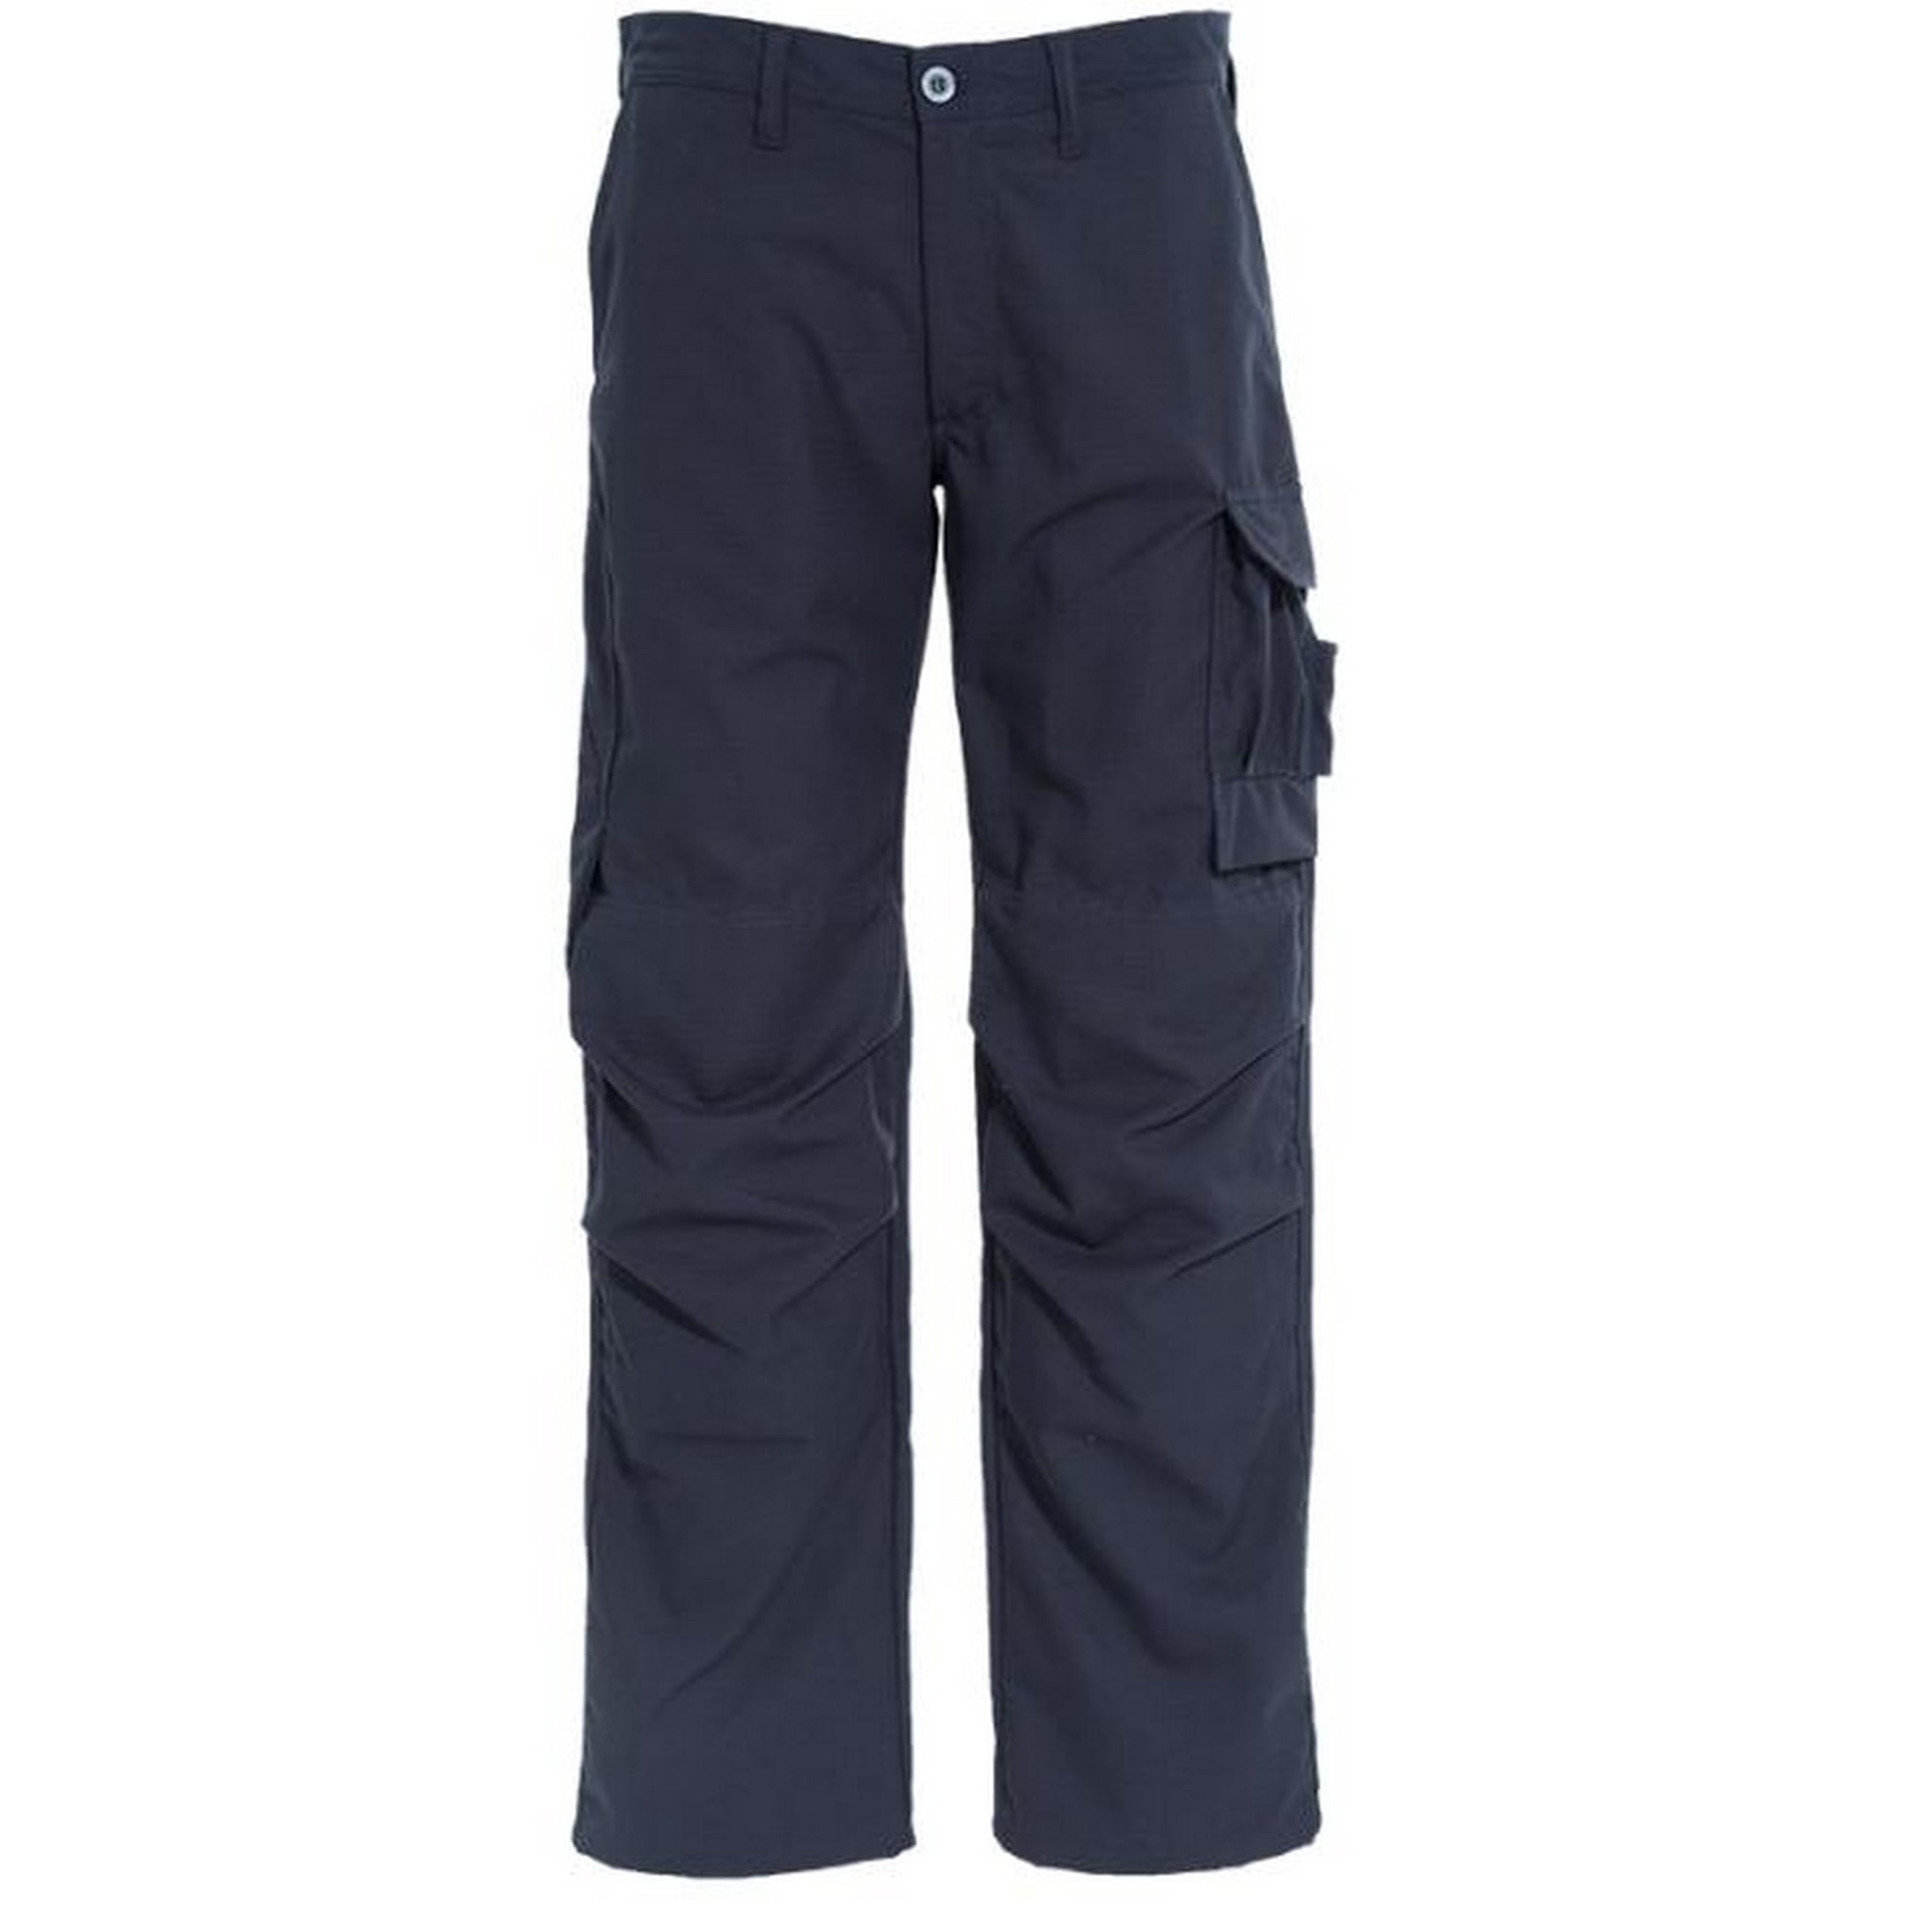 Wear Trousers Work Pants 6 Full Men's Cargo Cargo Pocket Men's Pants Mens  Thin Work Pants - Walmart.com